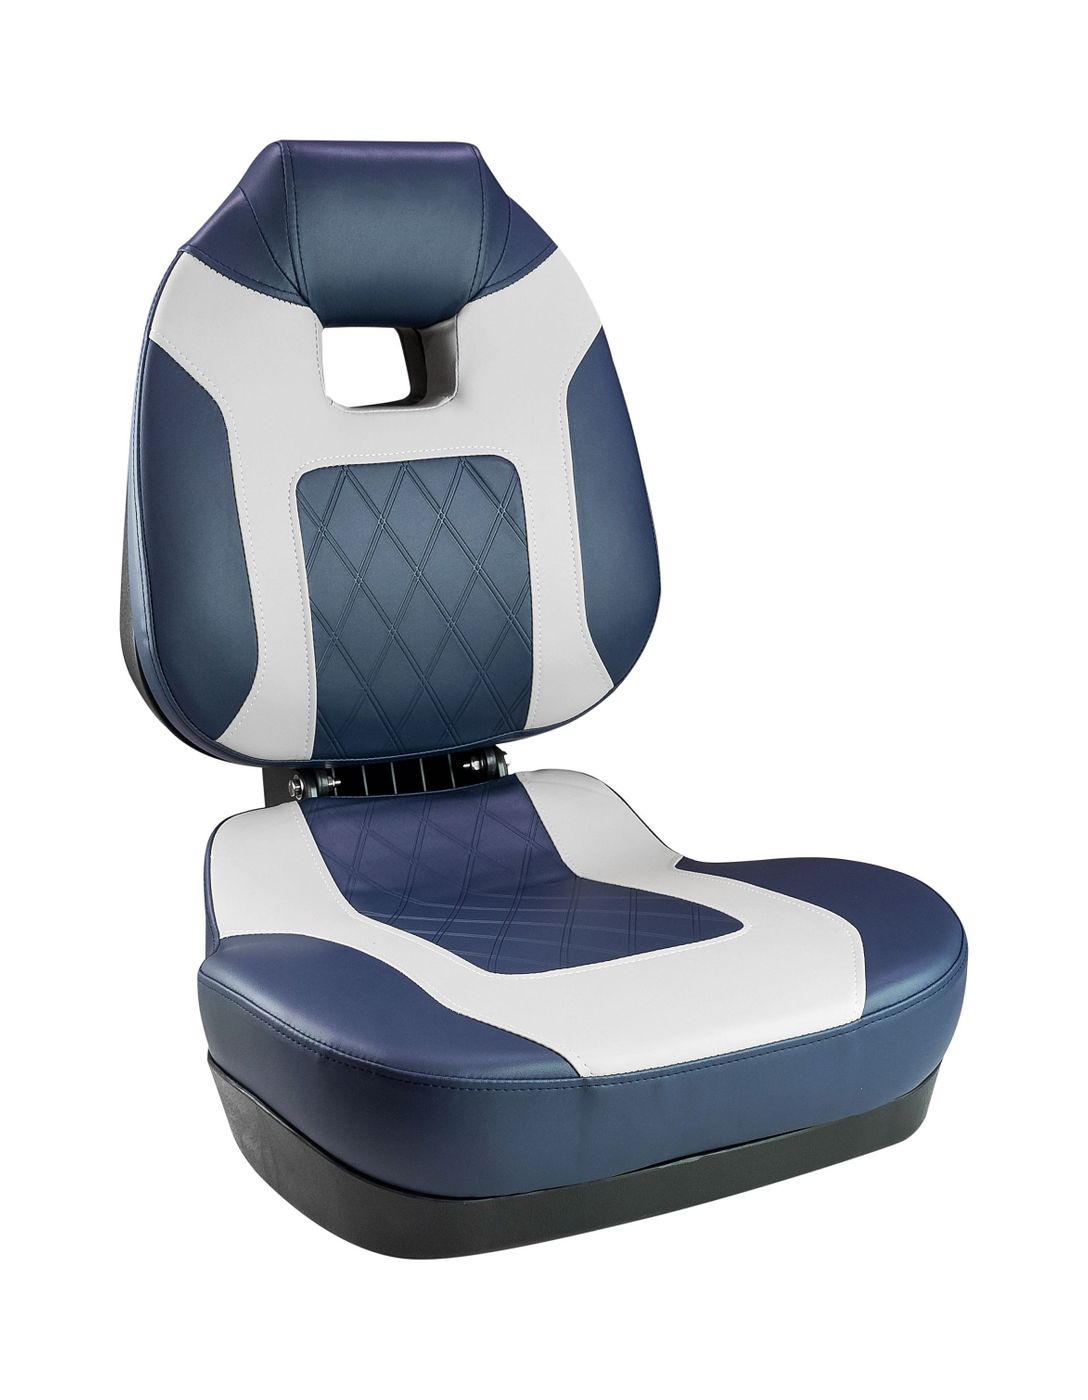 Кресло складное мягкое FISH PRO II с высокой спинкой, цвет синий/серый 1041419 кресло xxl складное мягкое двух ное серый синий 1040691